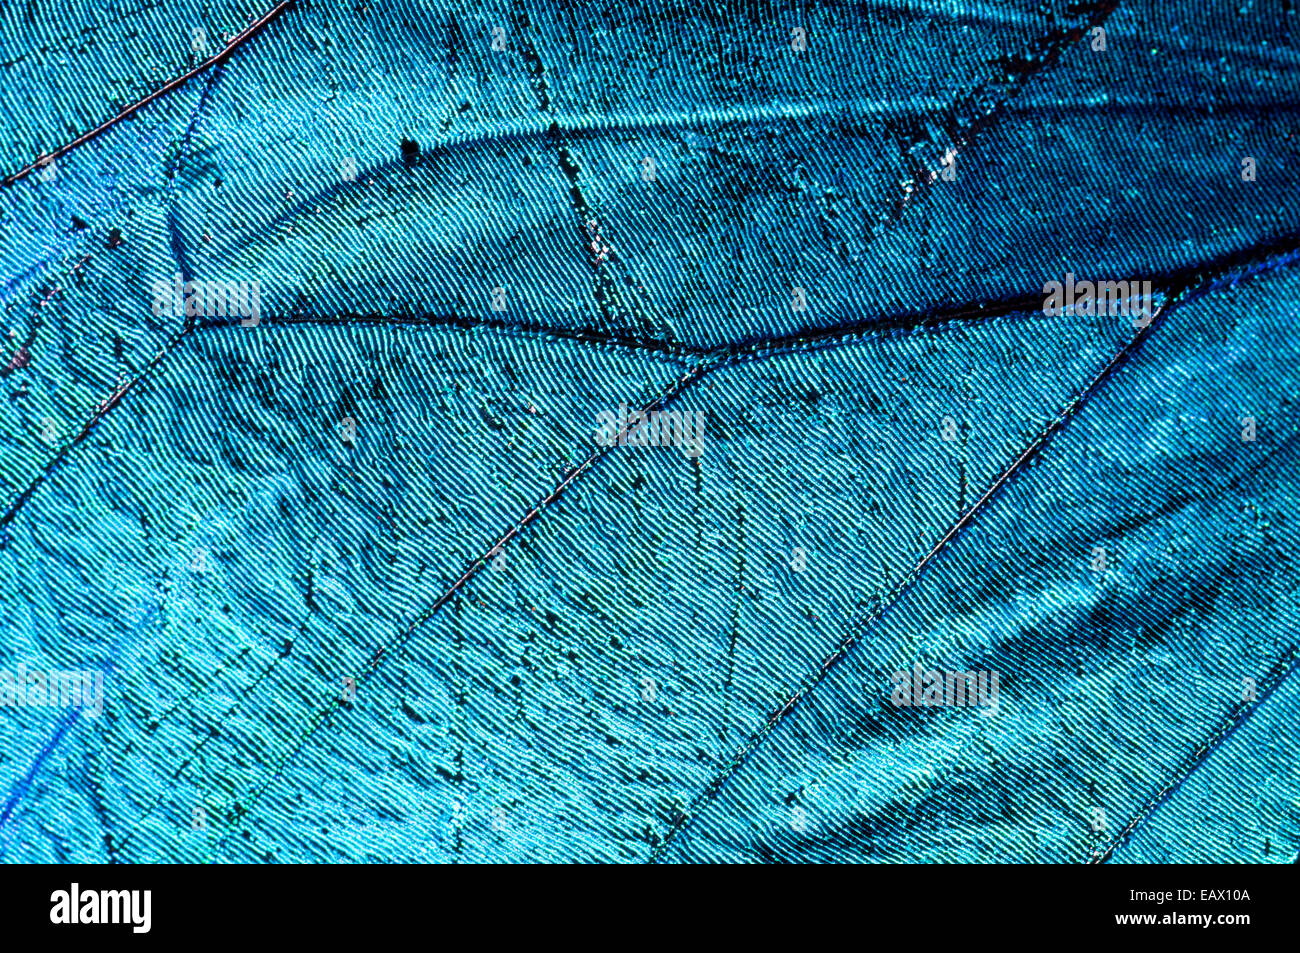 Die schillernde metallic blau Skalen und Venen auf dem Flügel des Menelaos Blue Morpho Schmetterling. Stockfoto